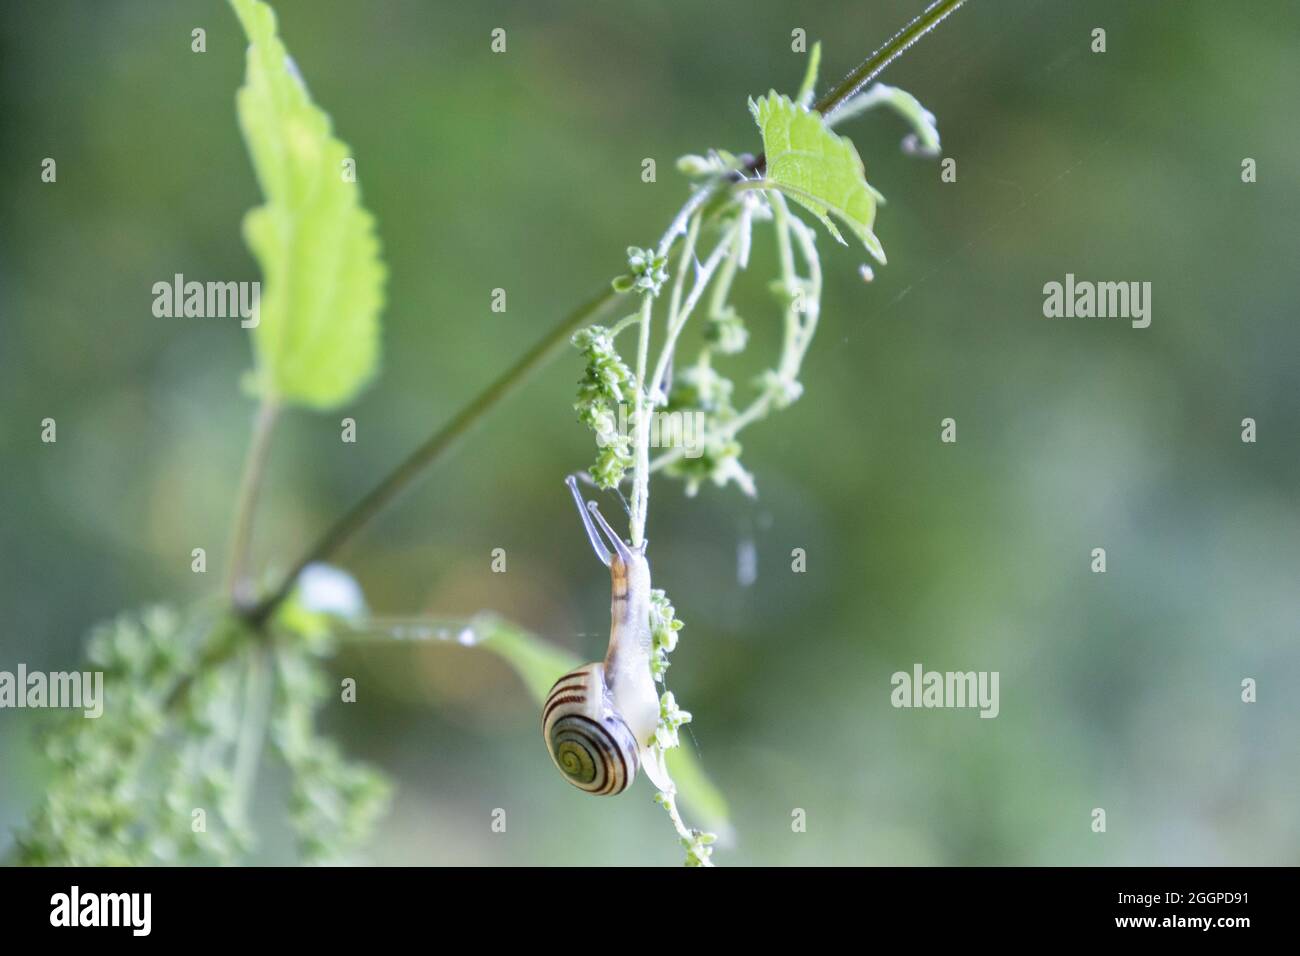 Little snail on common nettle Stock Photo